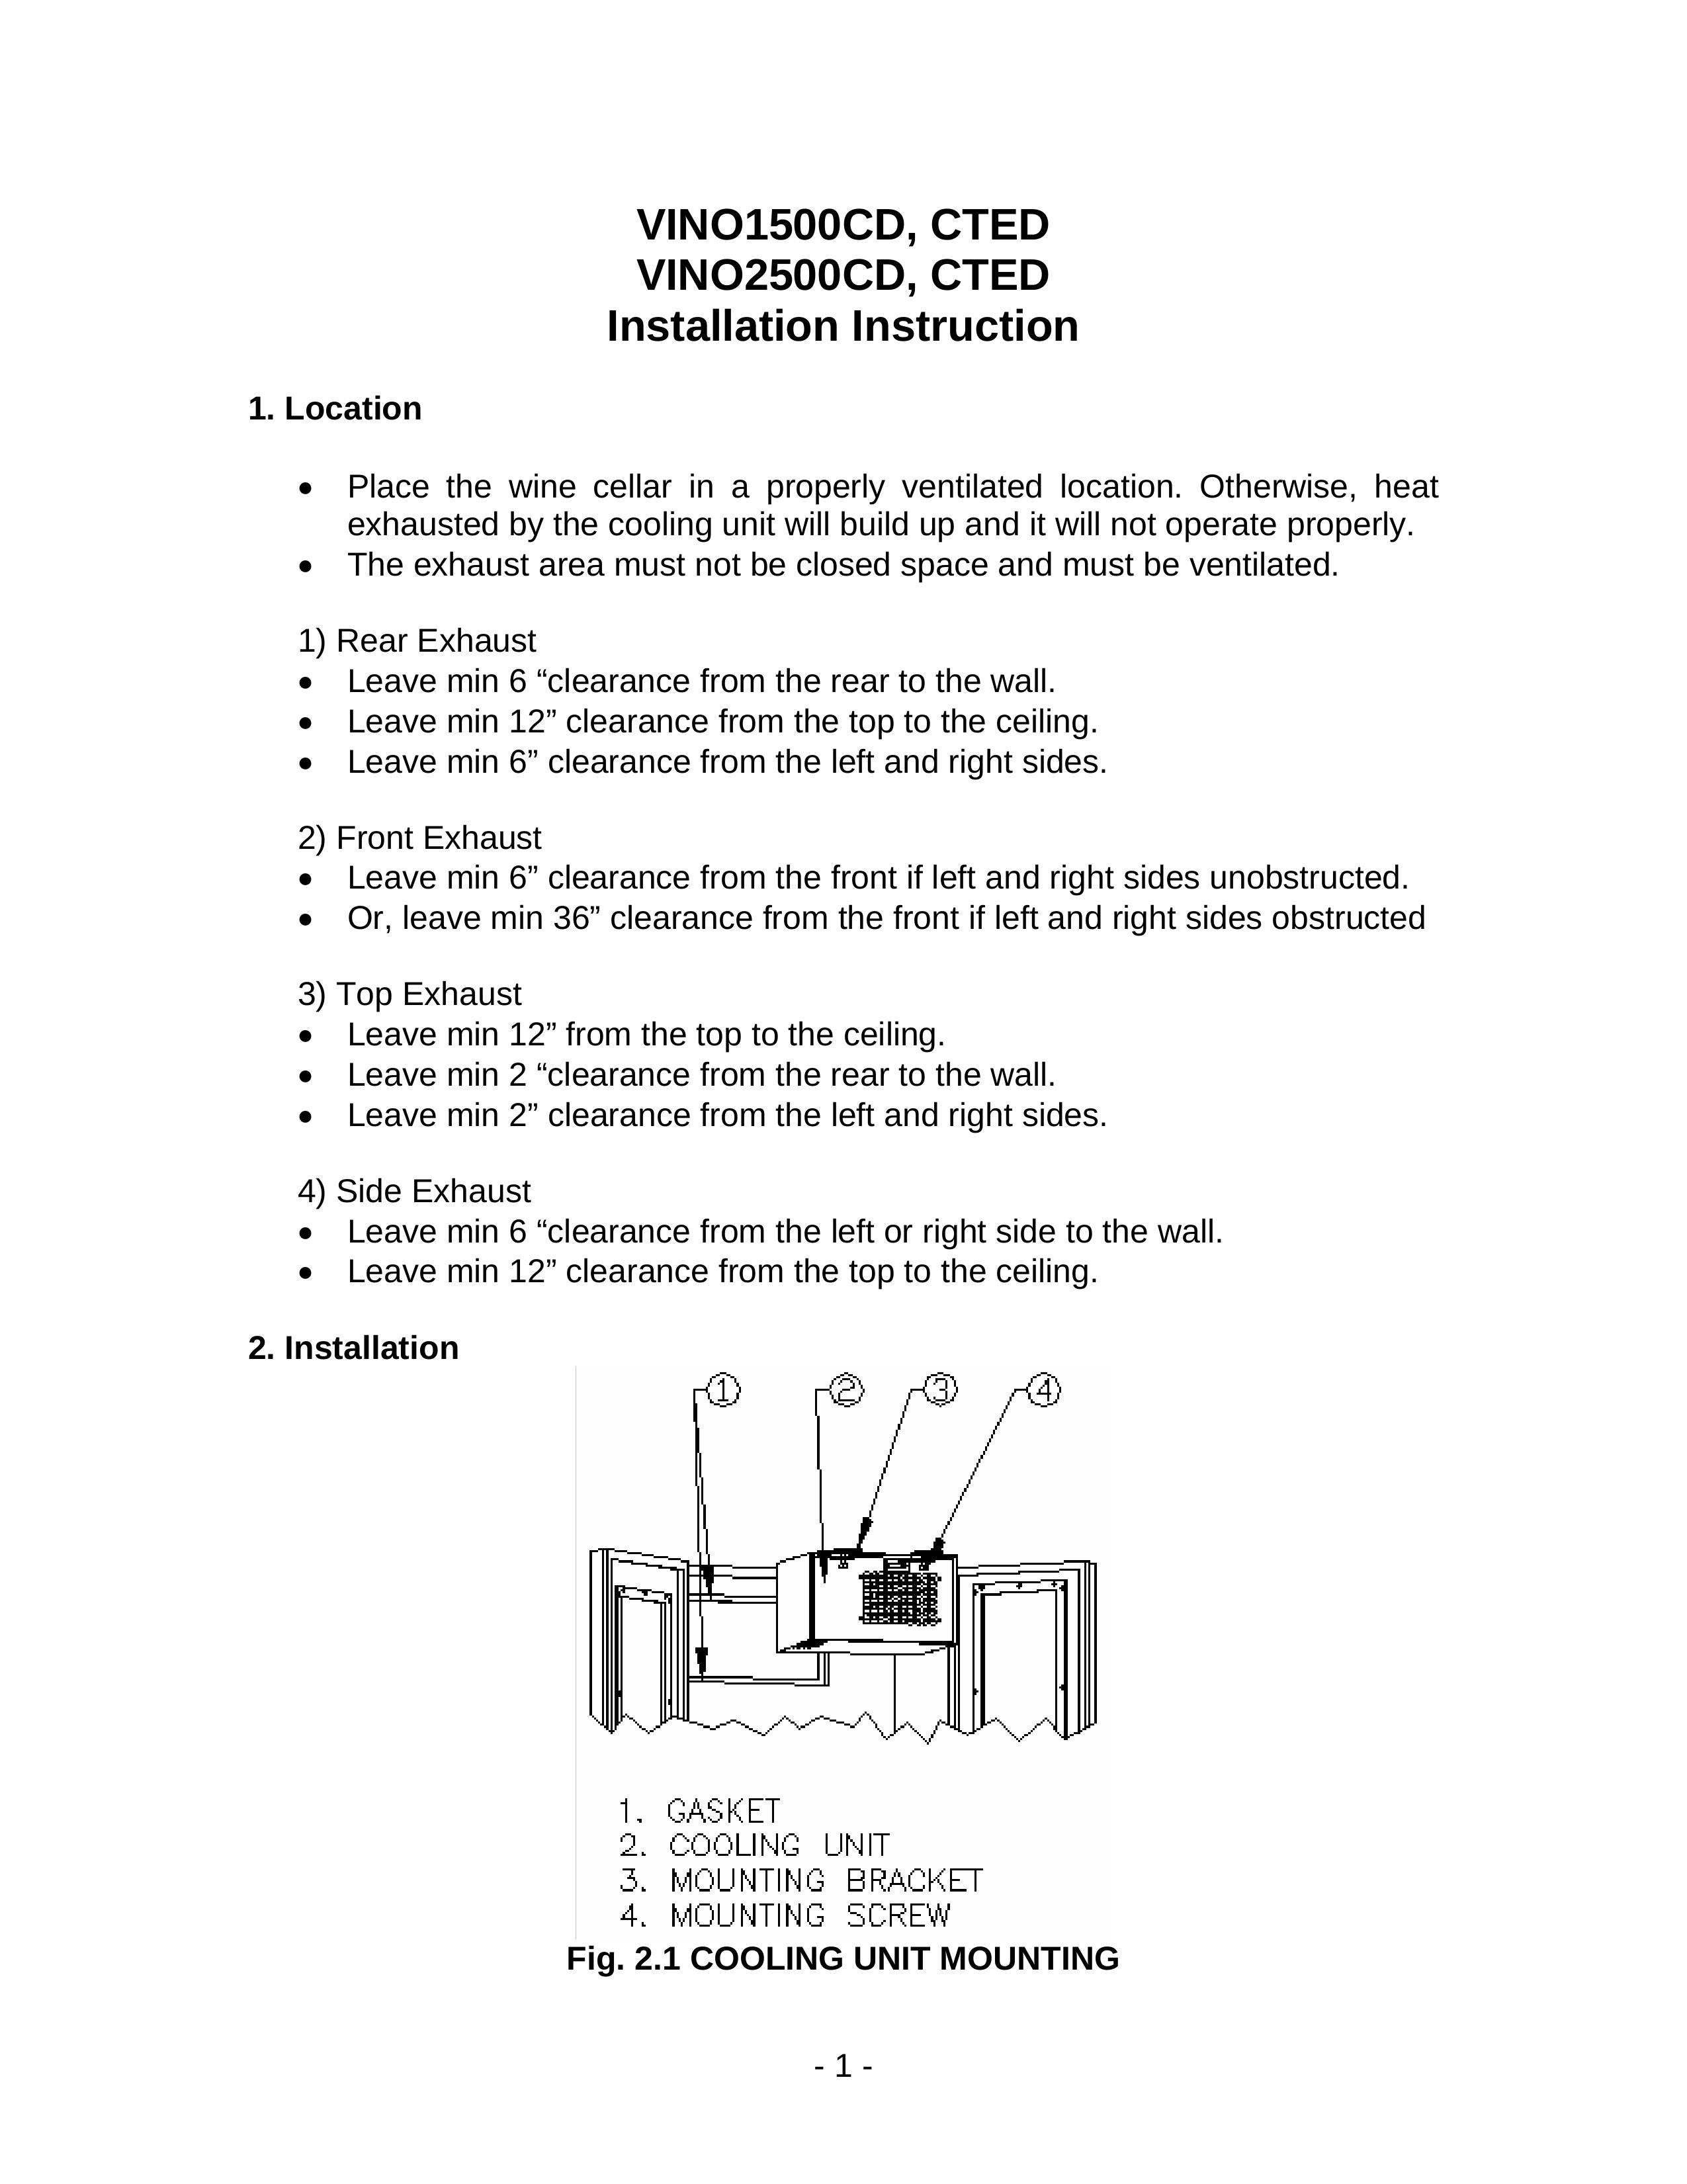 Vinotemp VINO2500CTED Refrigerator User Manual